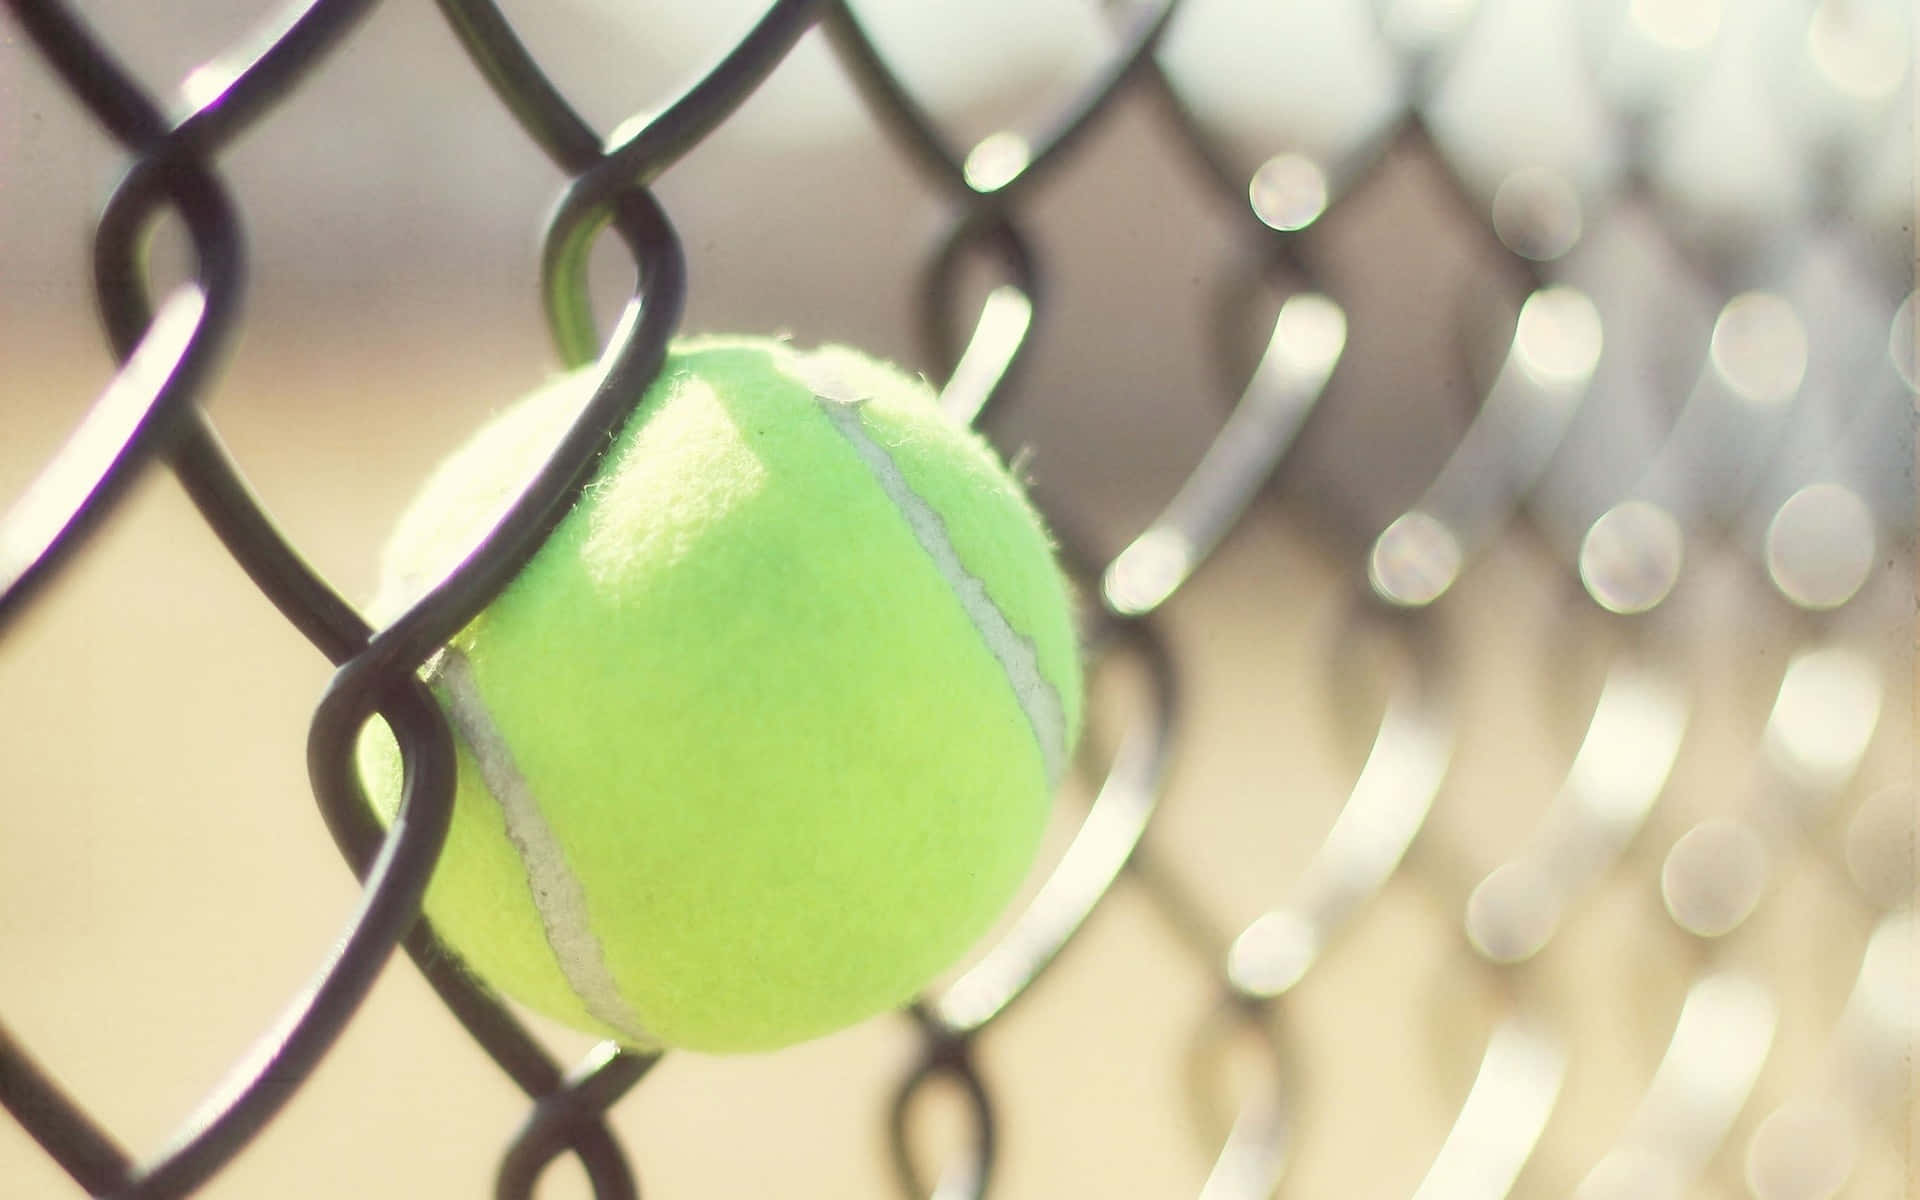 Et frisk, hoppende tennisbold, der venter på sin næste spil. Wallpaper